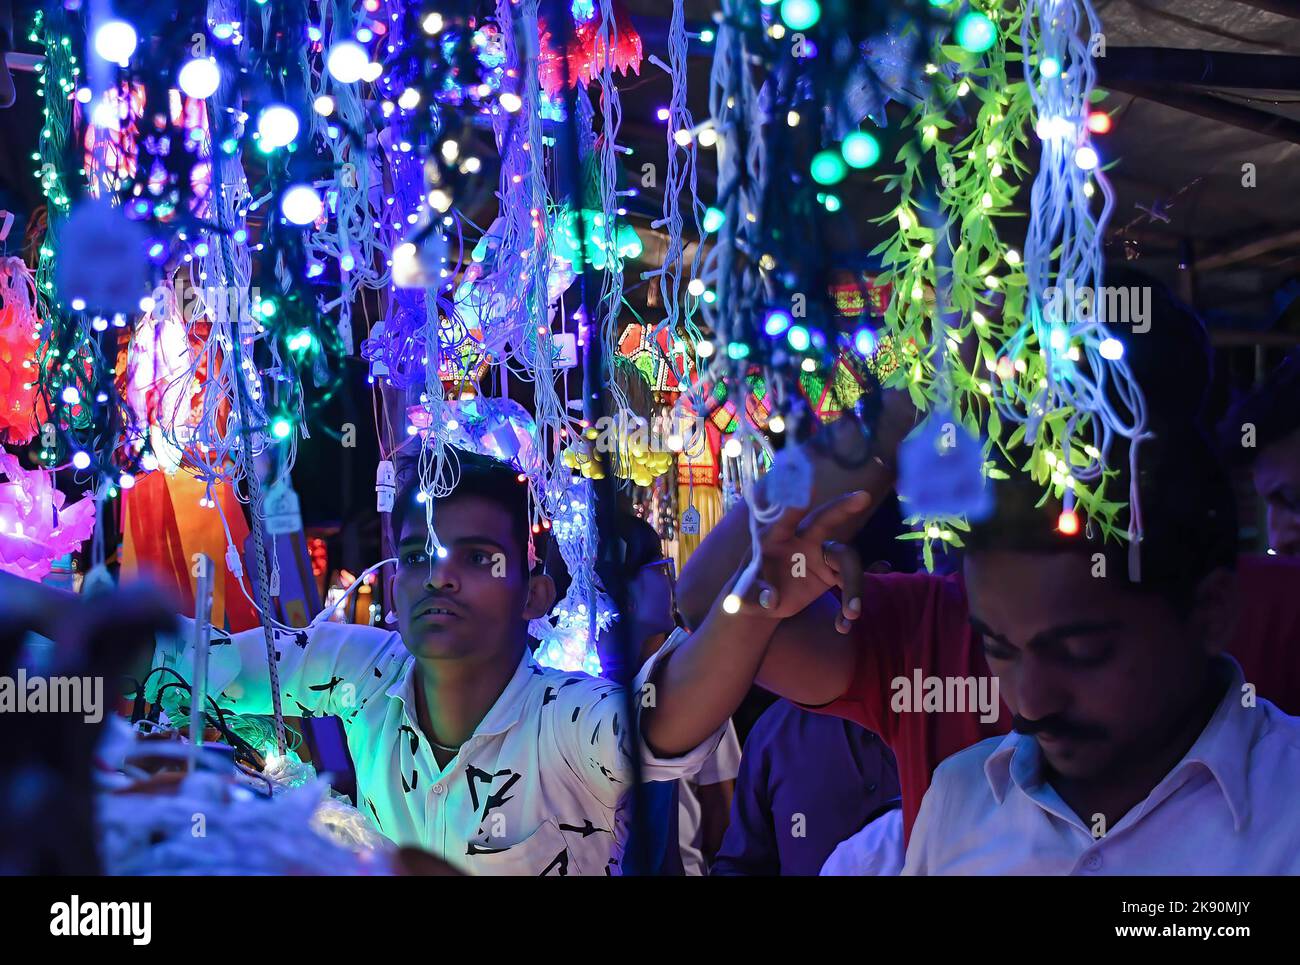 Ein Mann zeigt auf die Lichter, die auf den Straßen von Mumbai zum Verkauf gehalten werden. Diwali wird als Lichterfest gefeiert, Hindus schmücken ihr Zuhause mit irdenen Lampen und bunten Laternen in verschiedenen Formen und Größen. Diwali symbolisiert den Sieg des Lichts über die Dunkelheit. Stockfoto